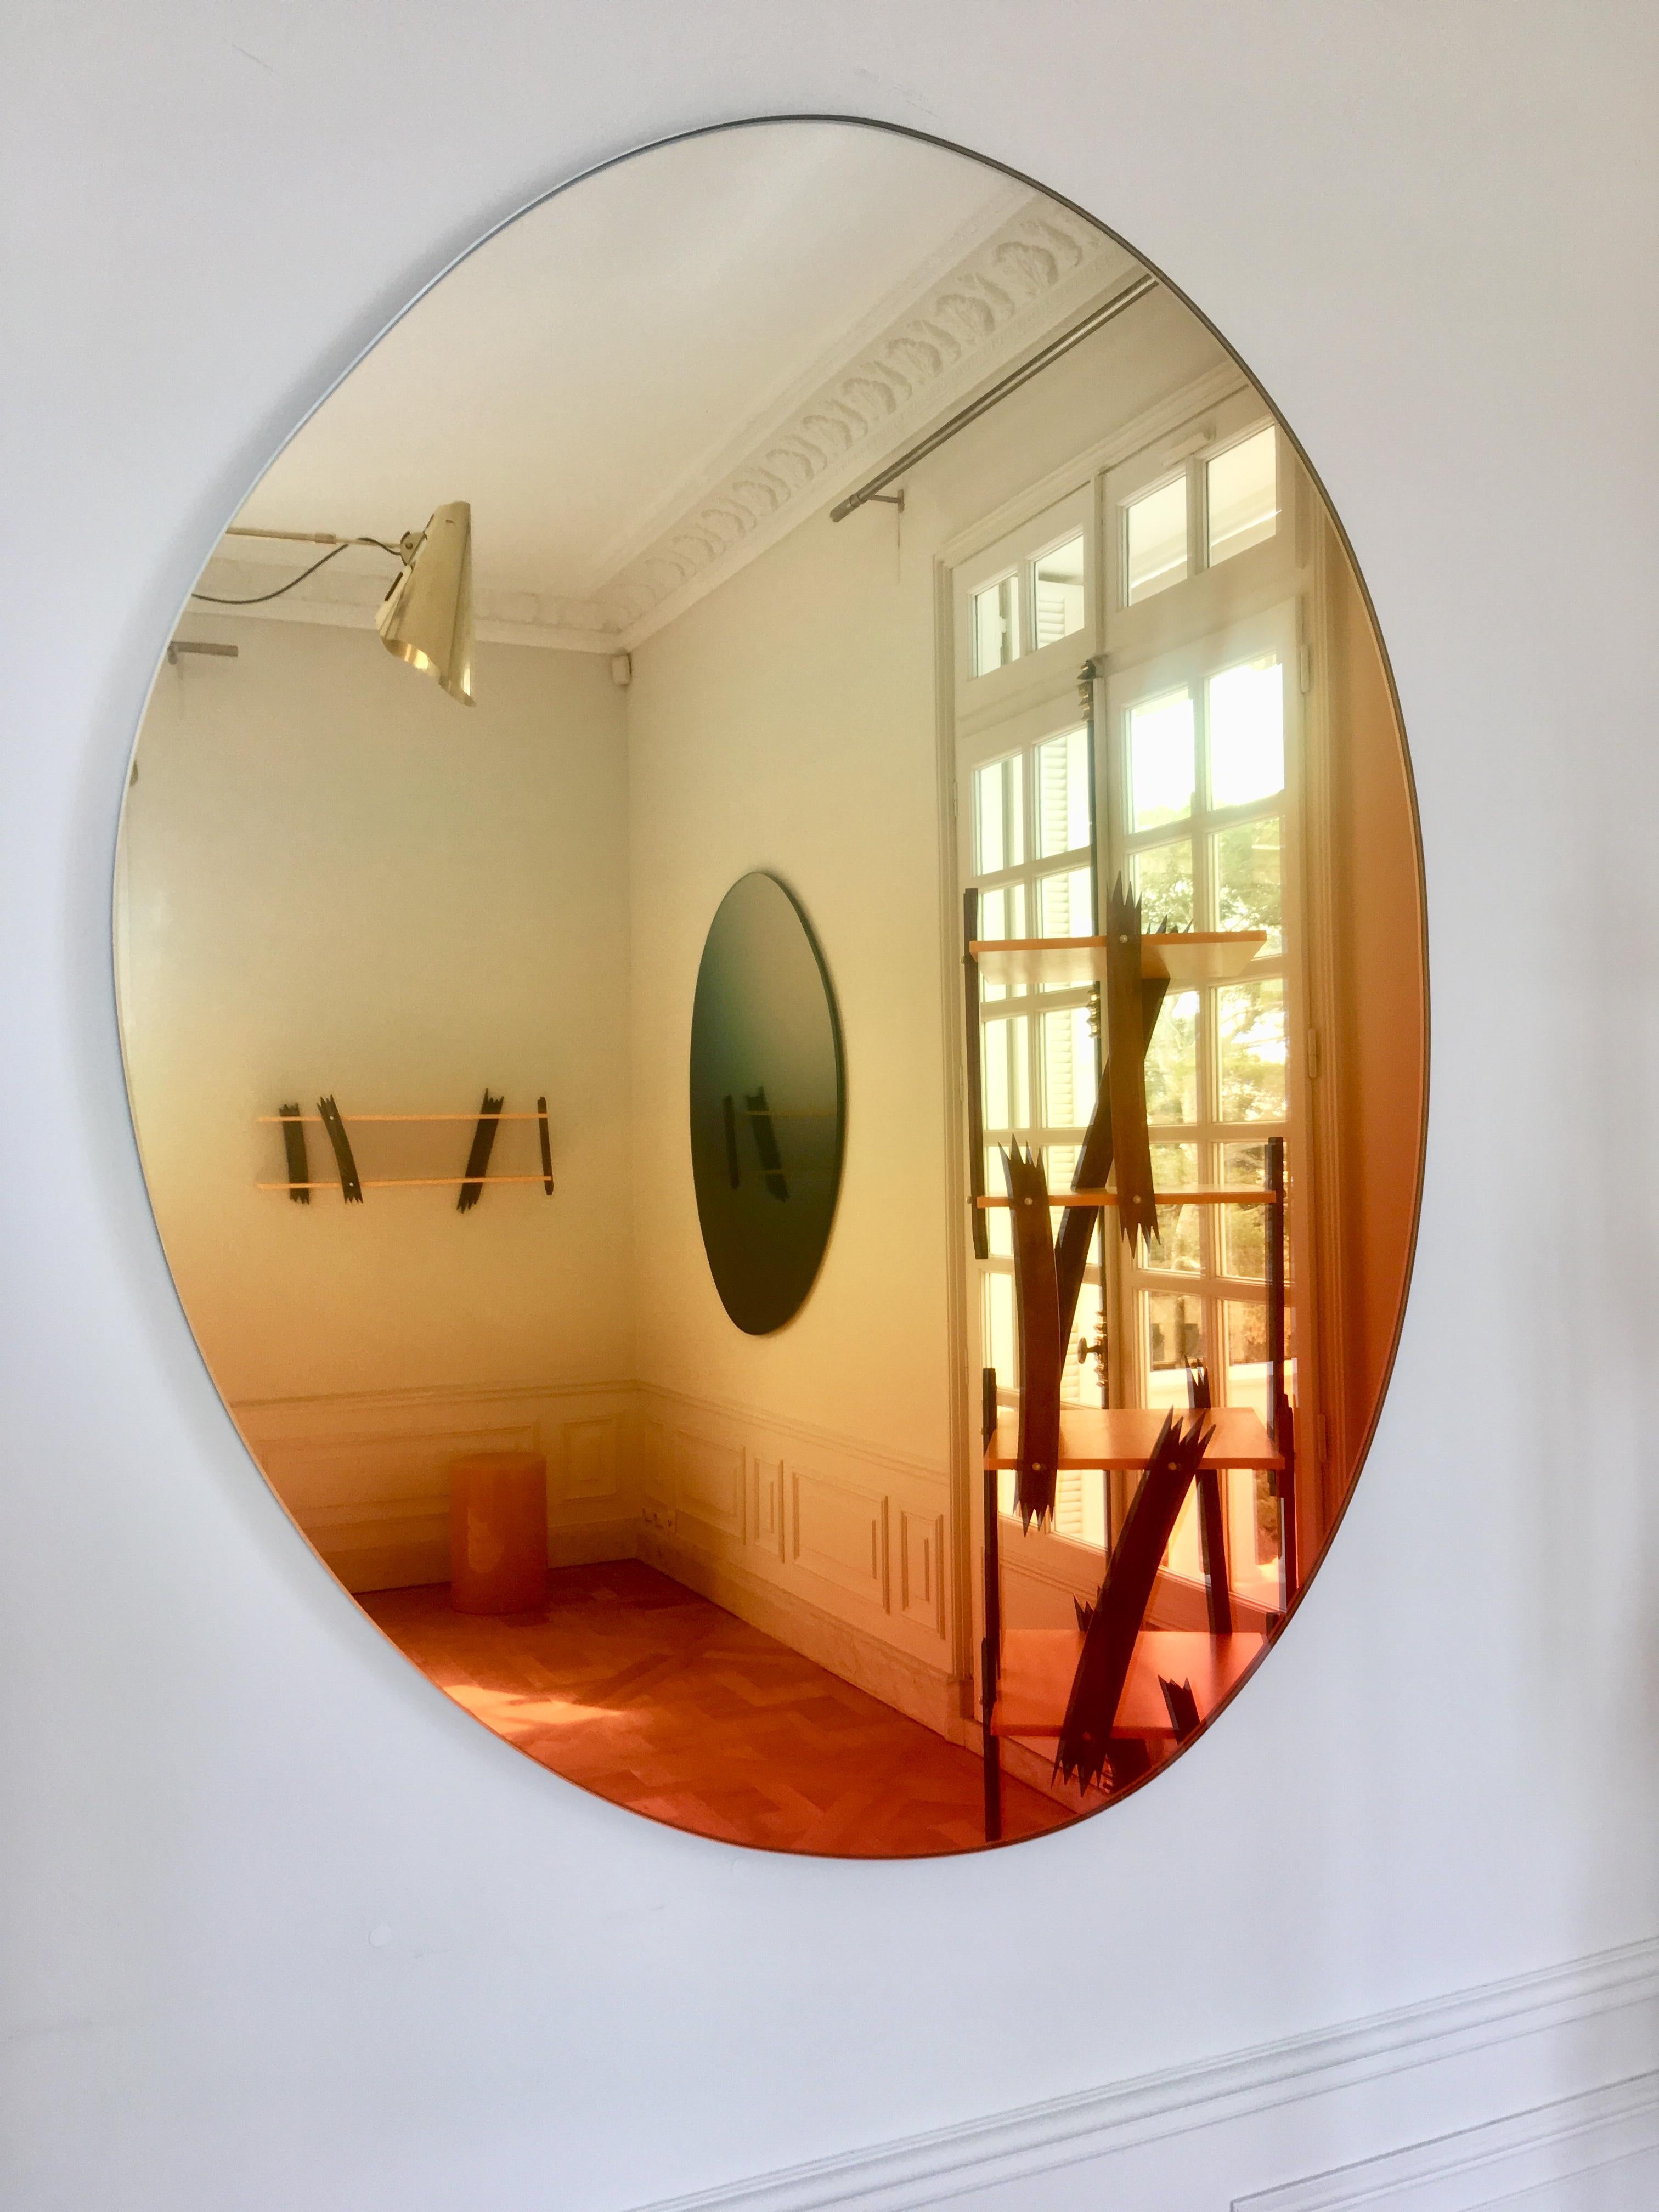 Neuestes Design in der Serie Off Round Hue Mirror

Sabine Marcelis und Brit van Nerven arbeiteten gemeinsam an dem Projekt 'Seeing Glass' - eine Serie von Glasobjekten, die aus einer laufenden Studie über optische Effekte mit Glas als primärem